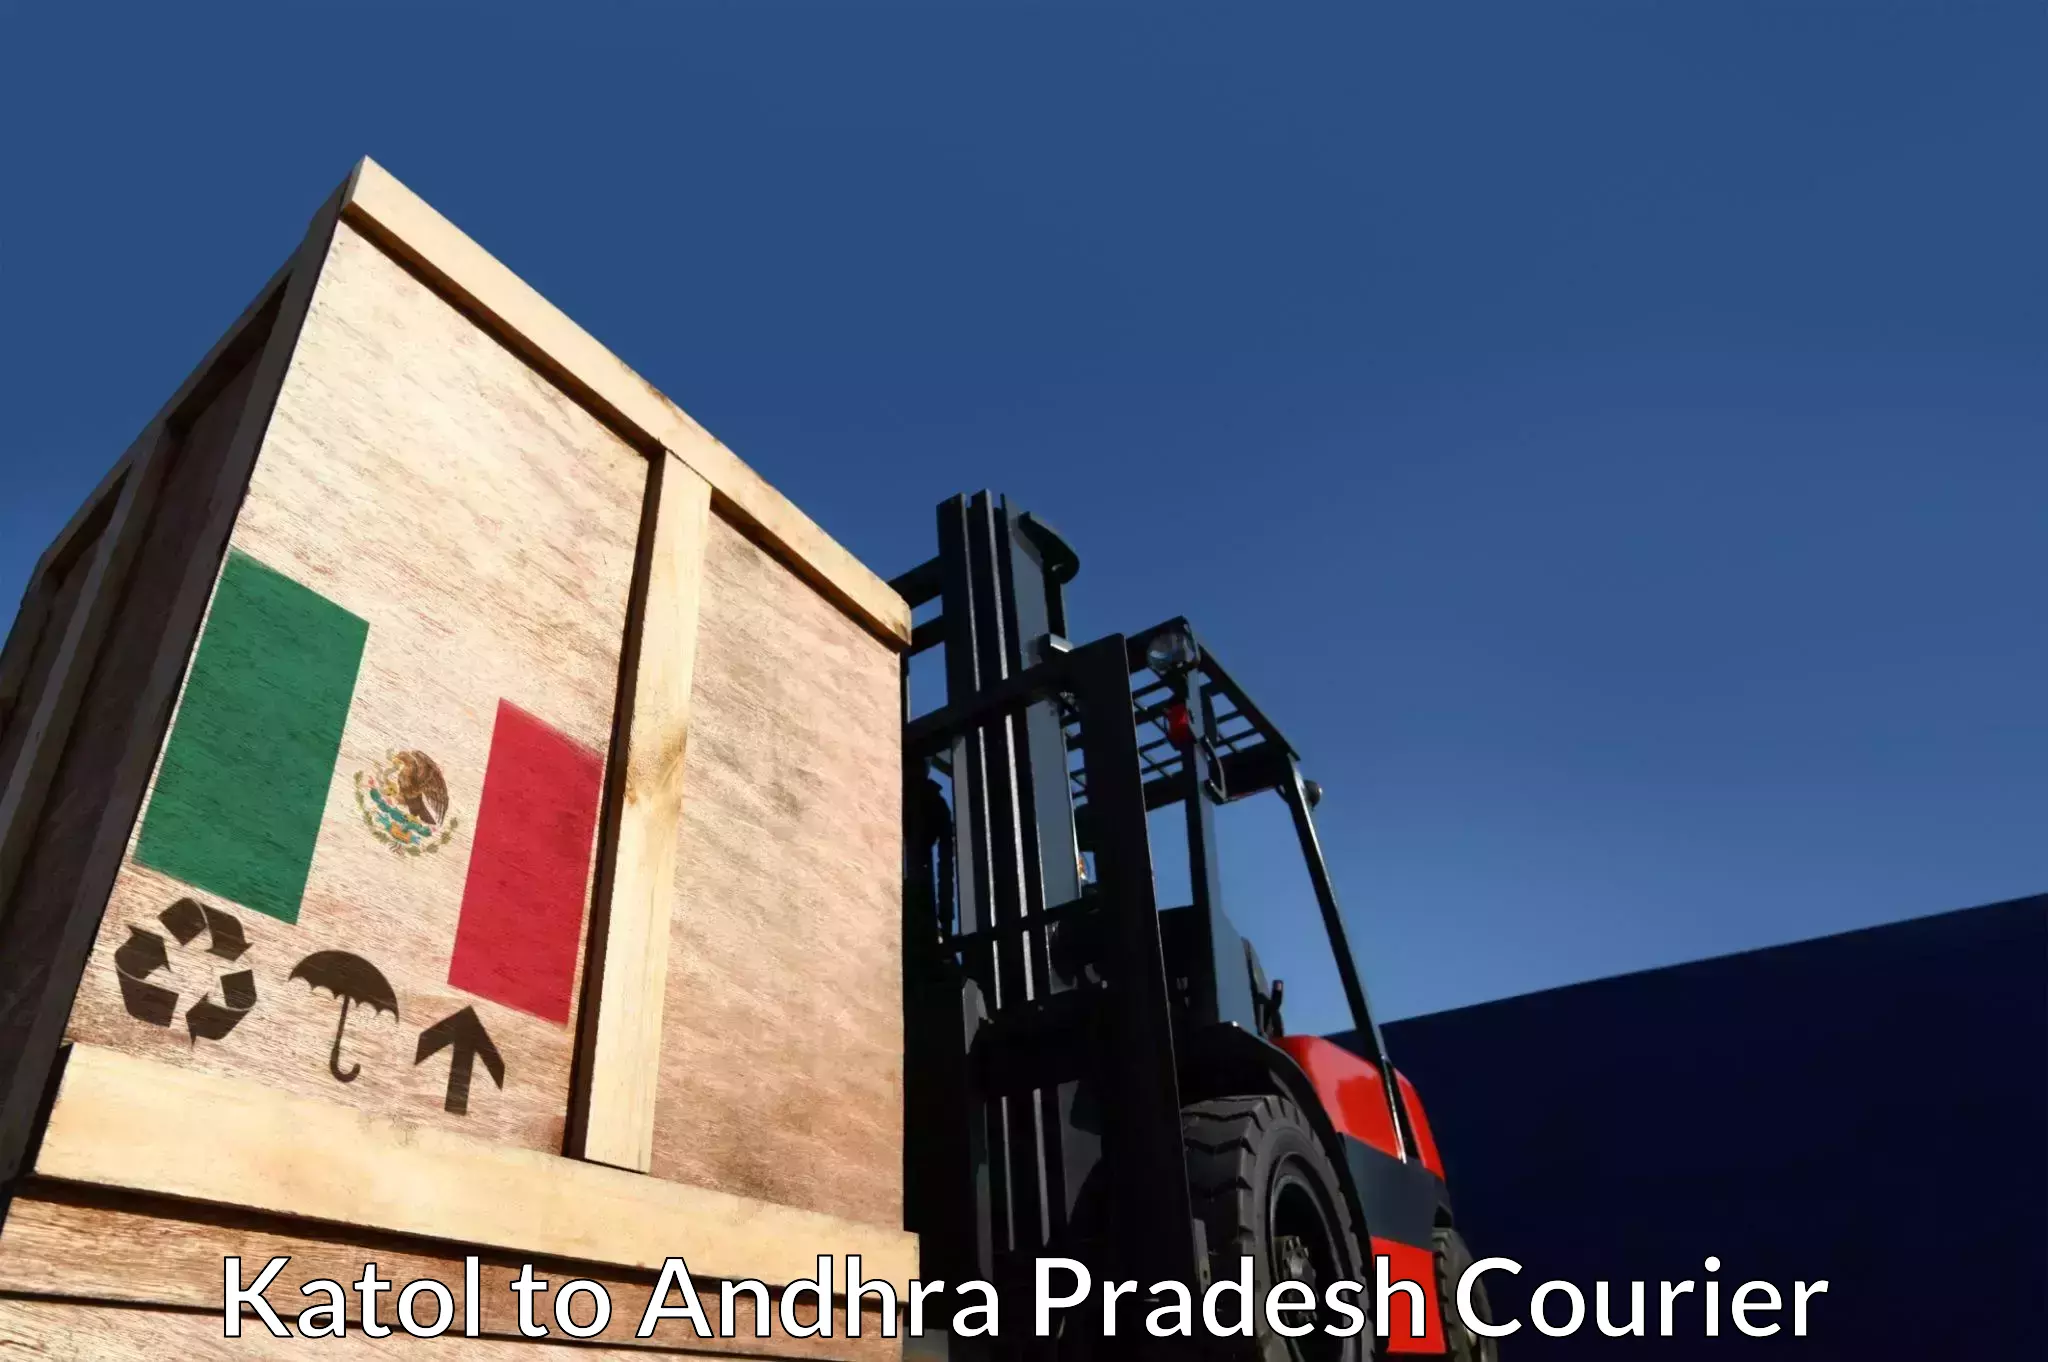 Next-day freight services Katol to Andhra Pradesh